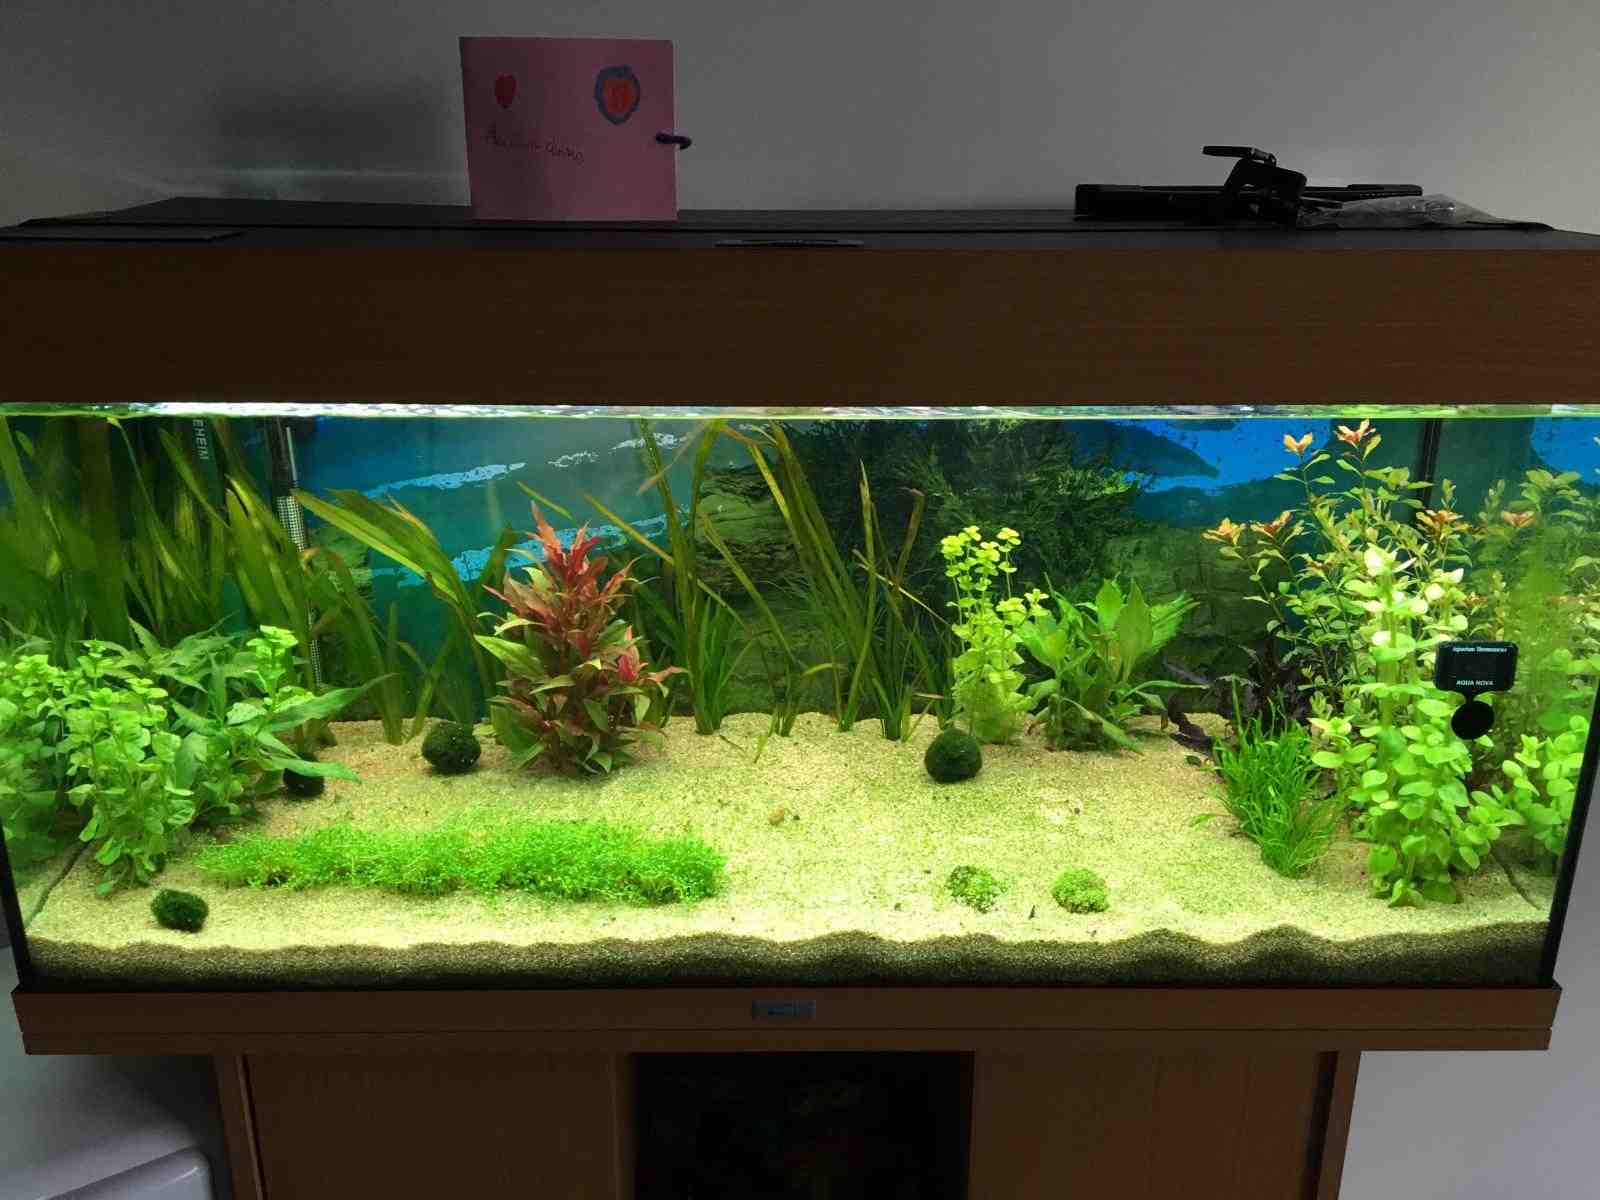 Quel type de sol pour la plante d'aquarium?